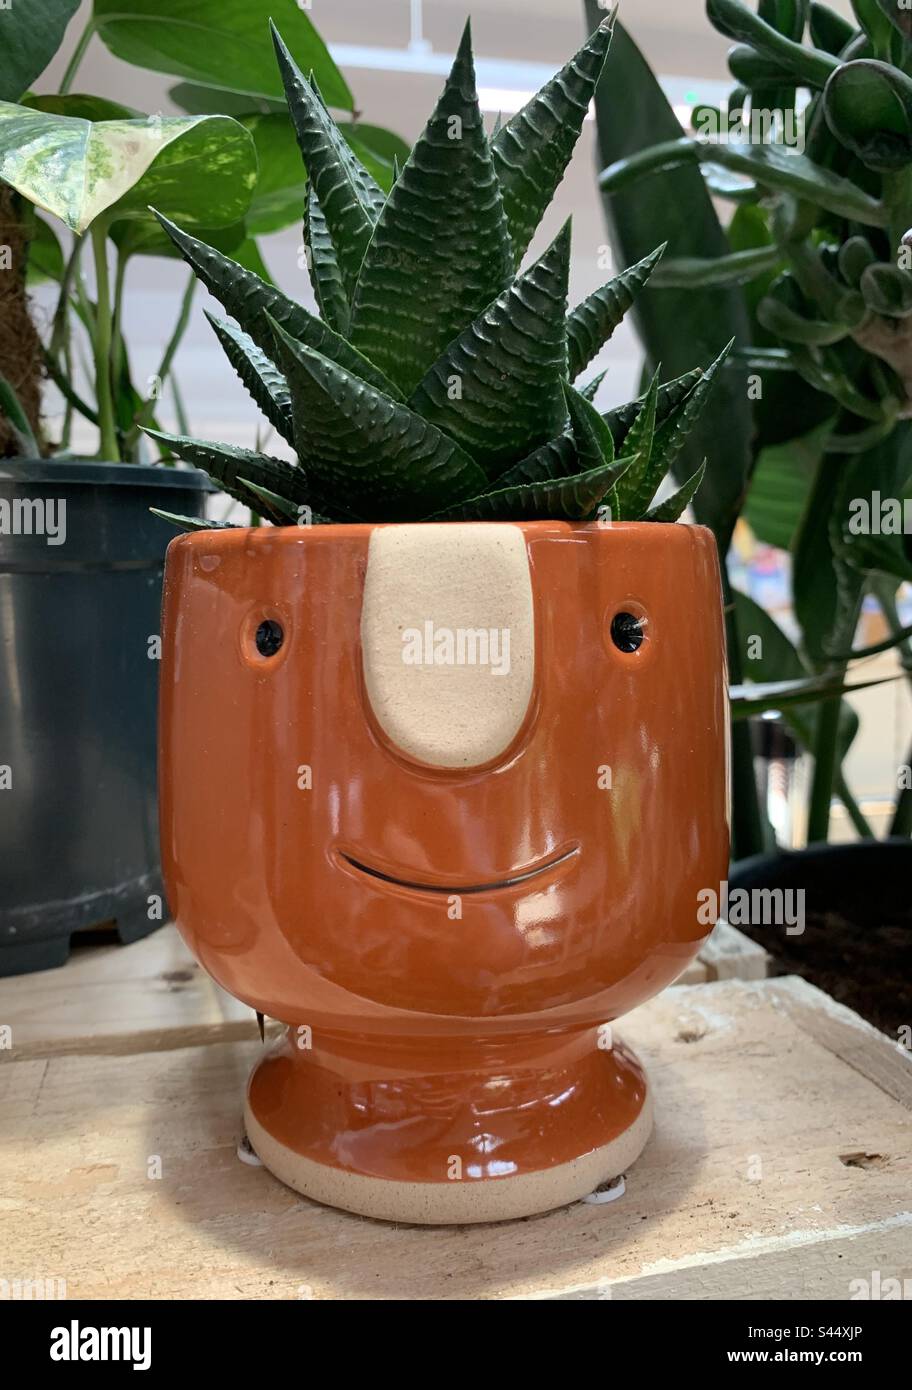 Maceta de cerámica con una planta suculenta en el interior y una cara sonriente. Foto de stock